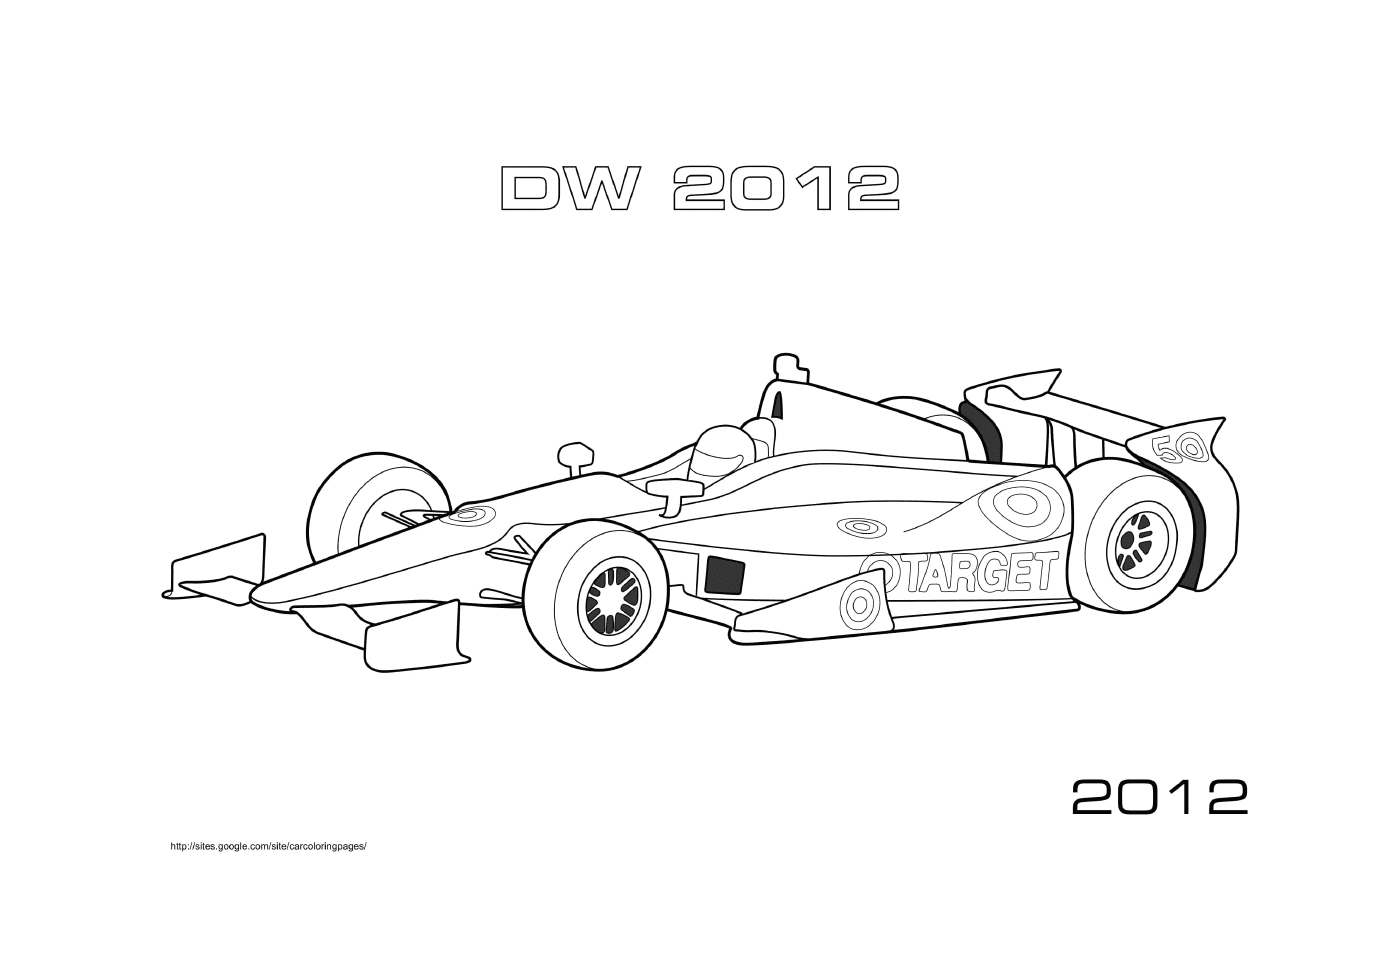  Окраска в стиле автомобиля F1 